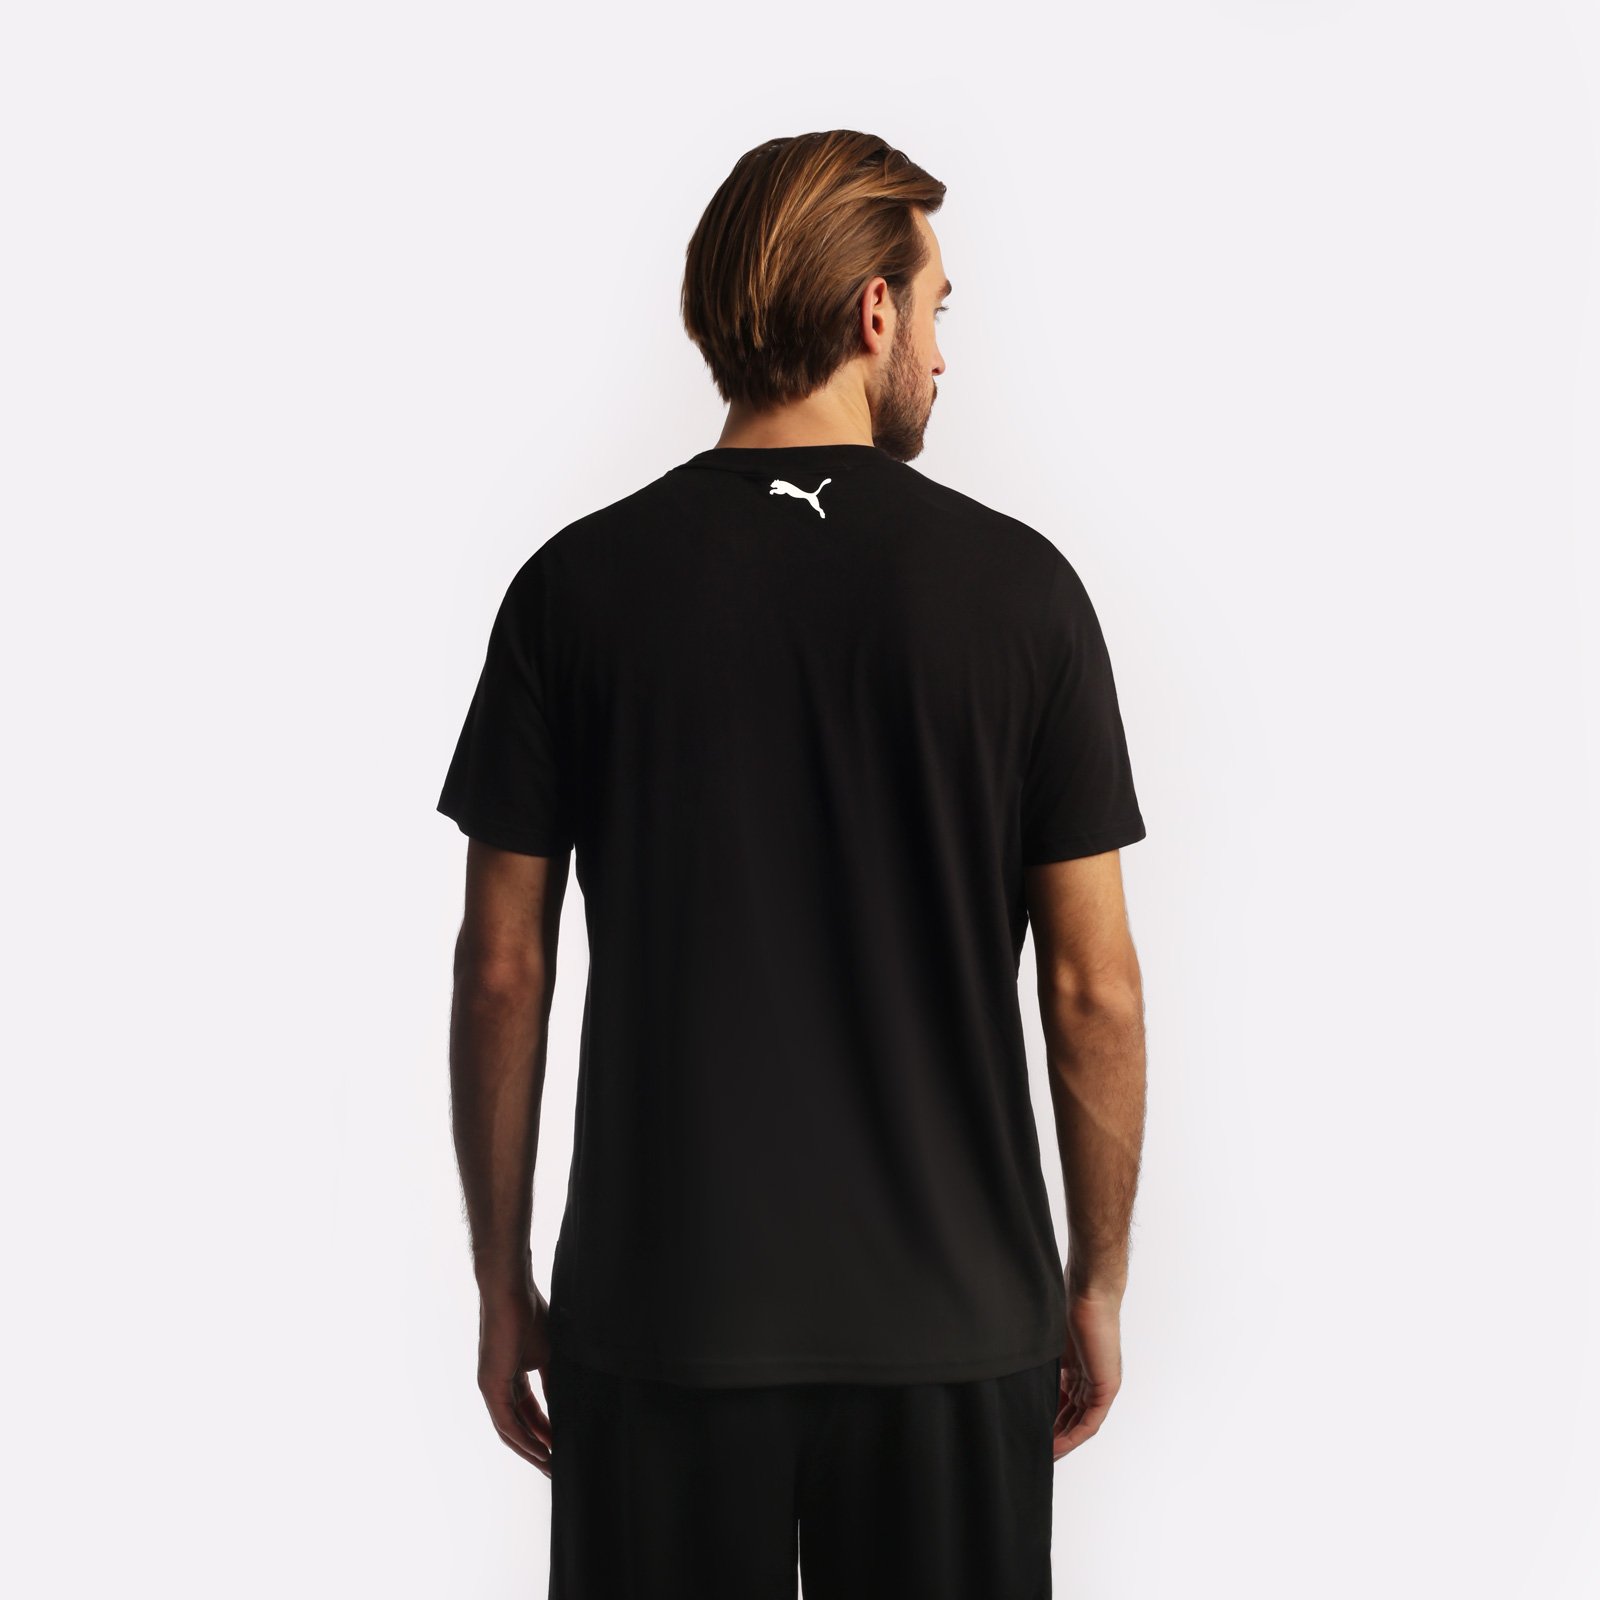 мужская футболка PUMA Perimeter Tee 1  (53857301)  - цена, описание, фото 2